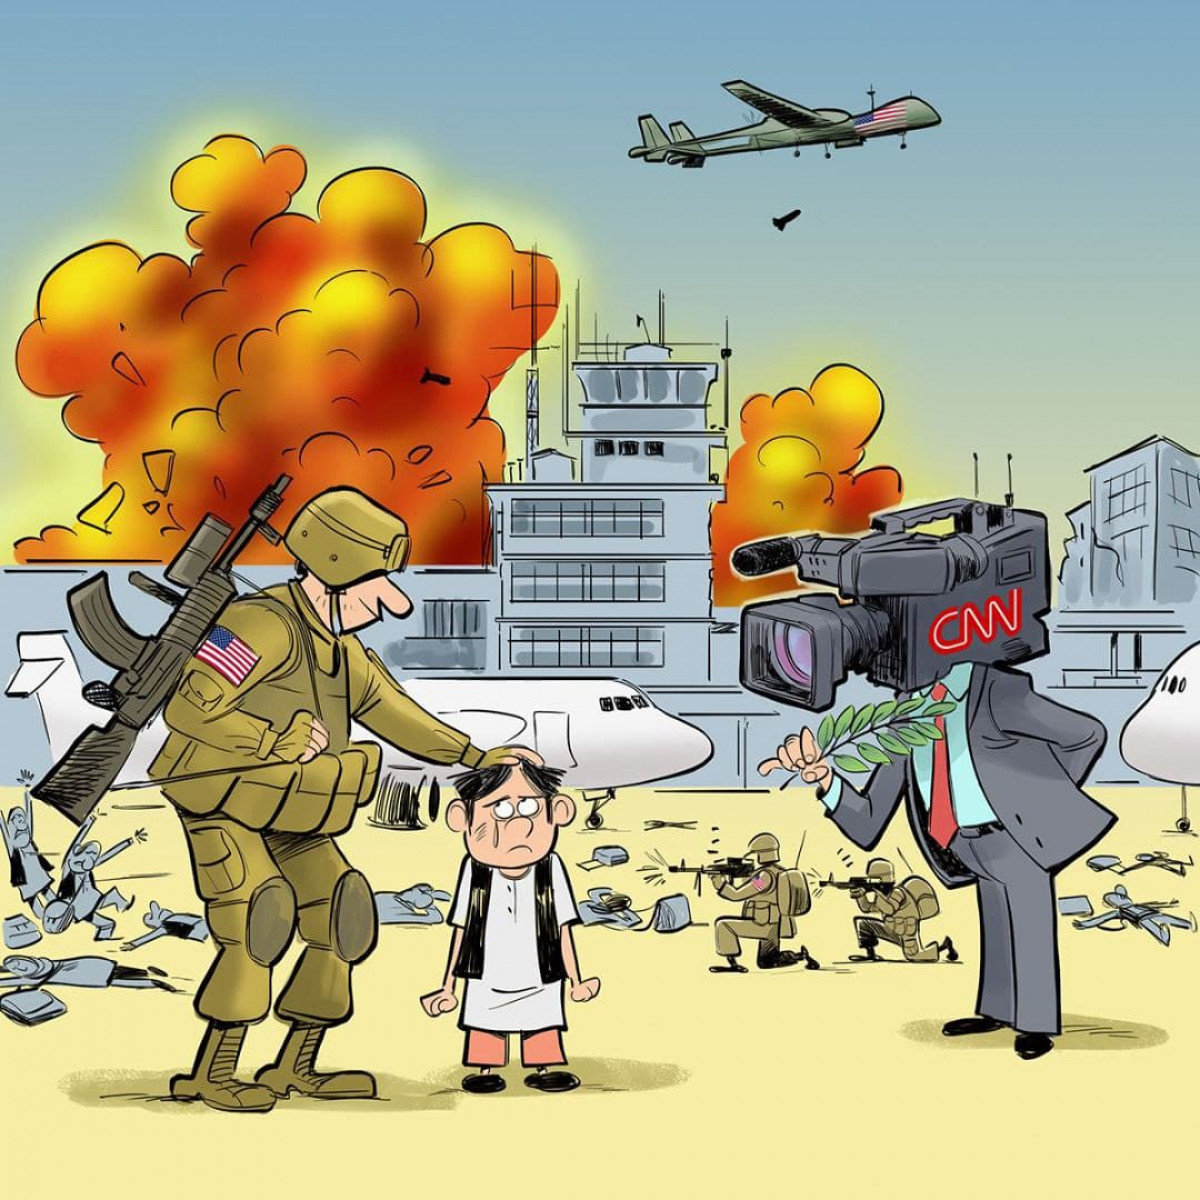 كاريكاتير / الإنسحاب الأمريكي من أفغانستان وتركيز الإعلام الغربي على الأحداث